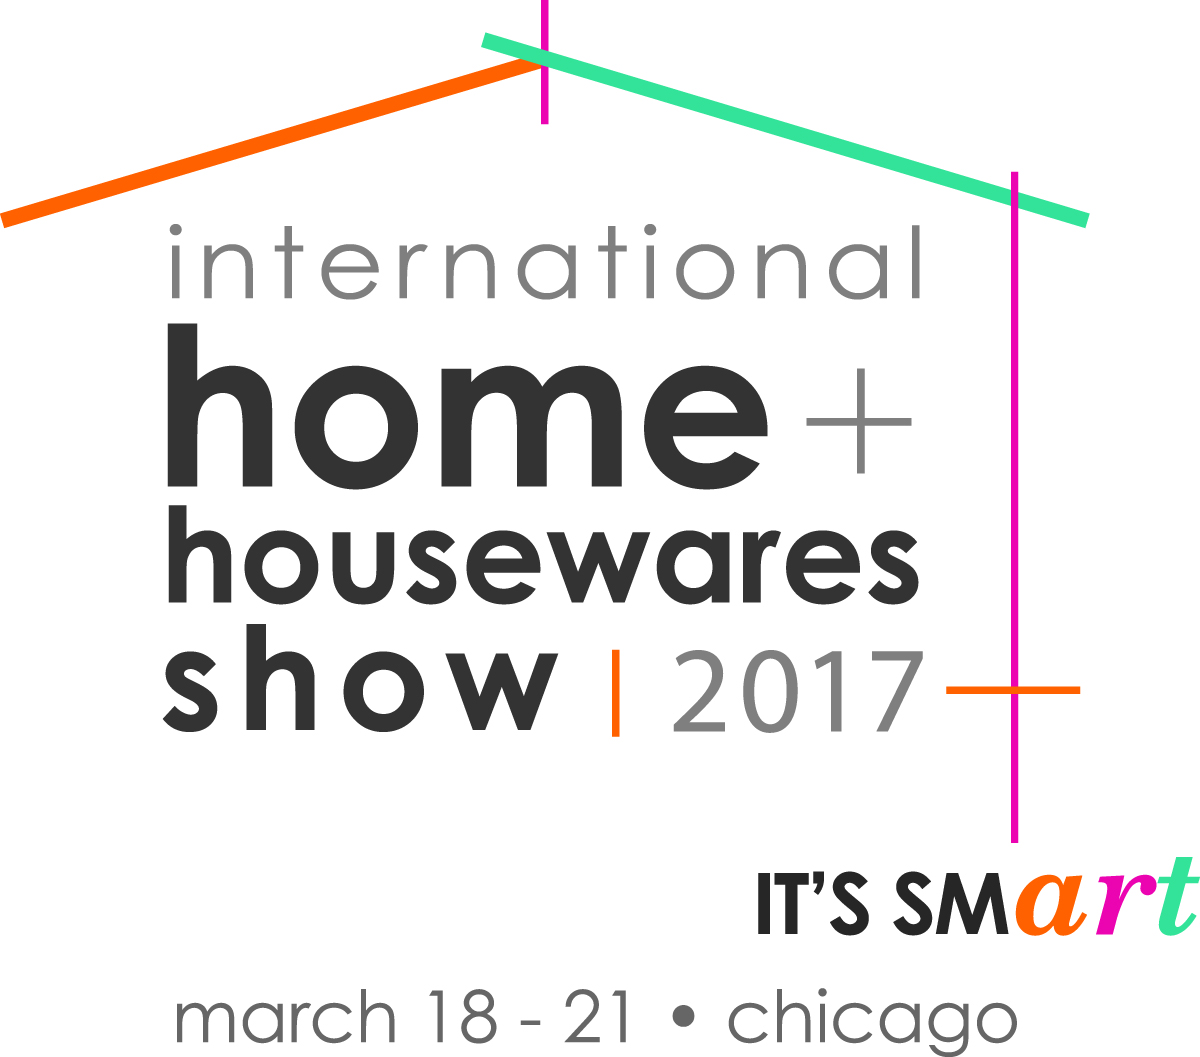 इंटरनेशनल होम + हाउसवेयर शो